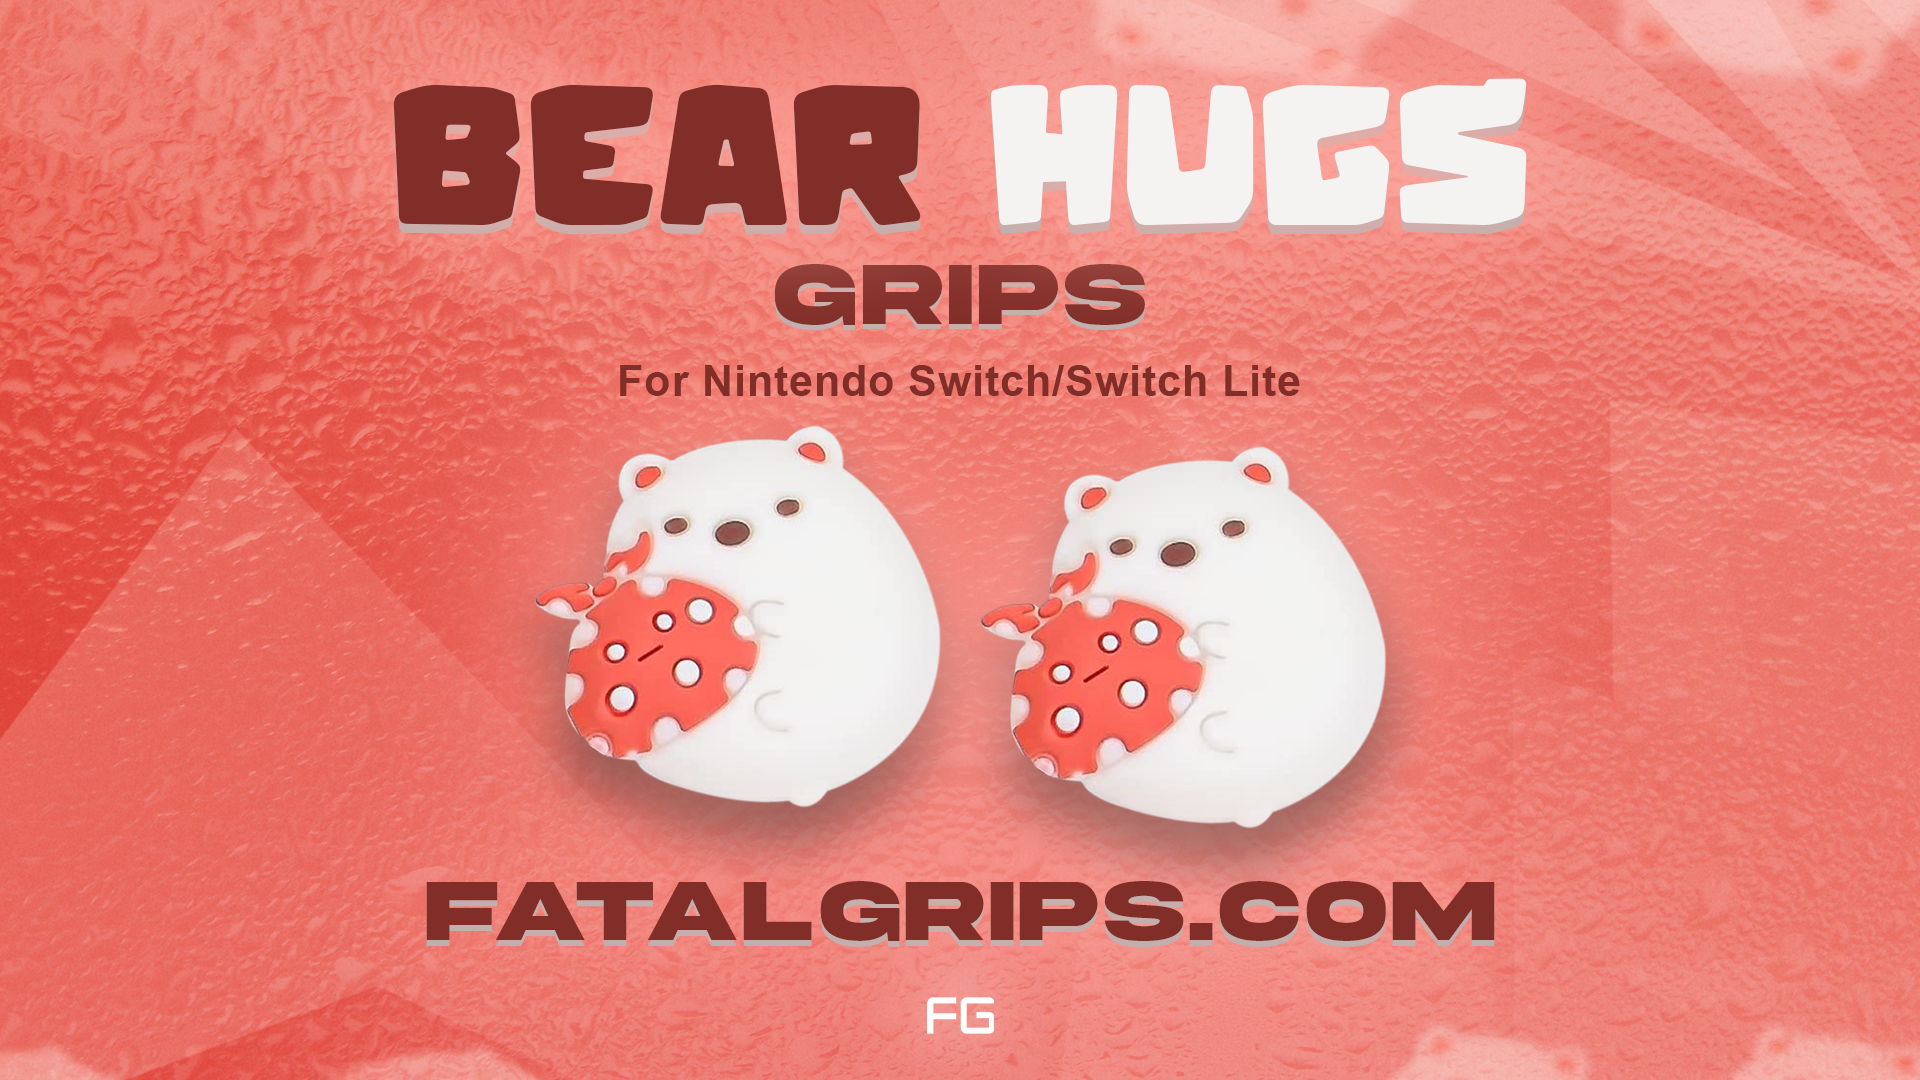 Bear Hugs Grips